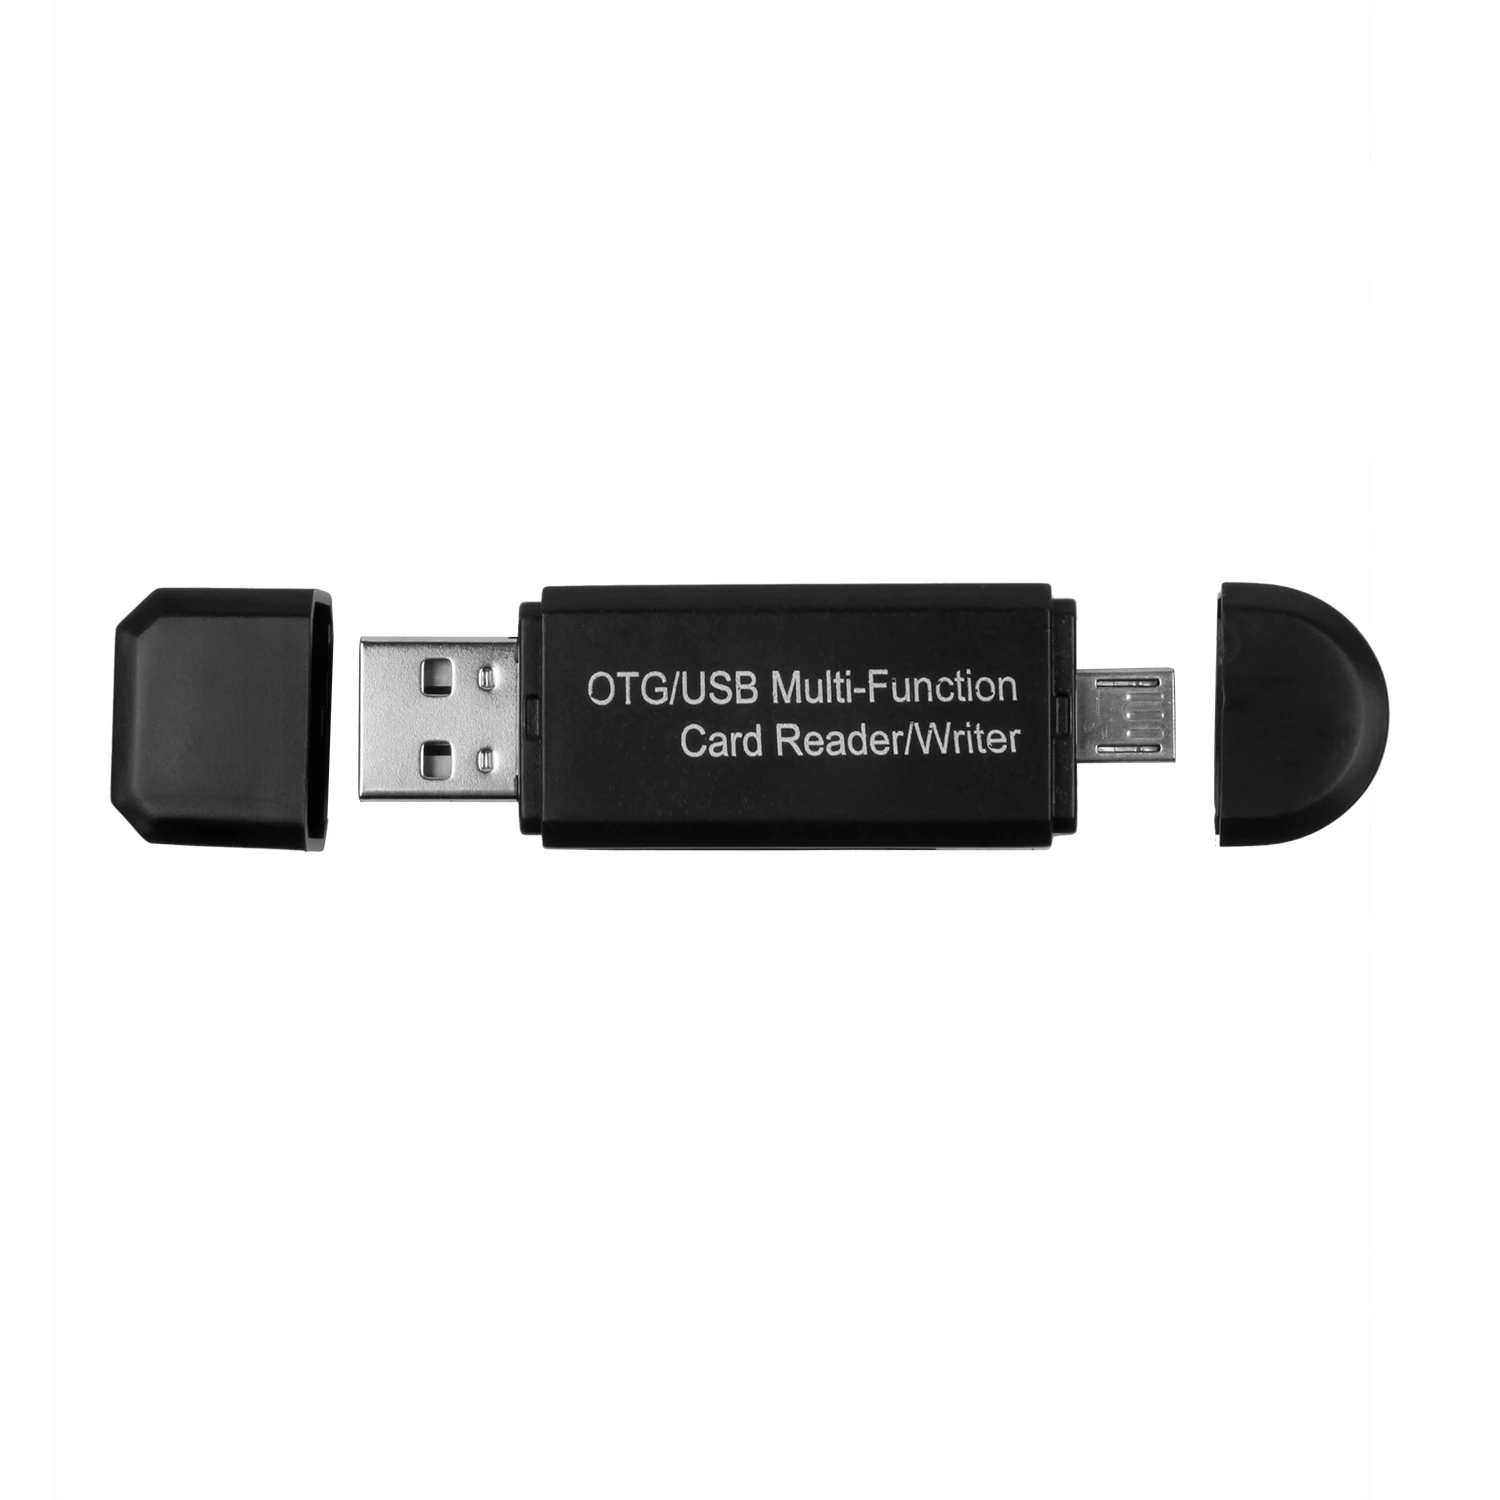 1 х пластиковый OTG кардридер Micro-SD/SD карта/USB телефон ридер TF Высокая скорость 2,0 Мультифункциональный кардридер